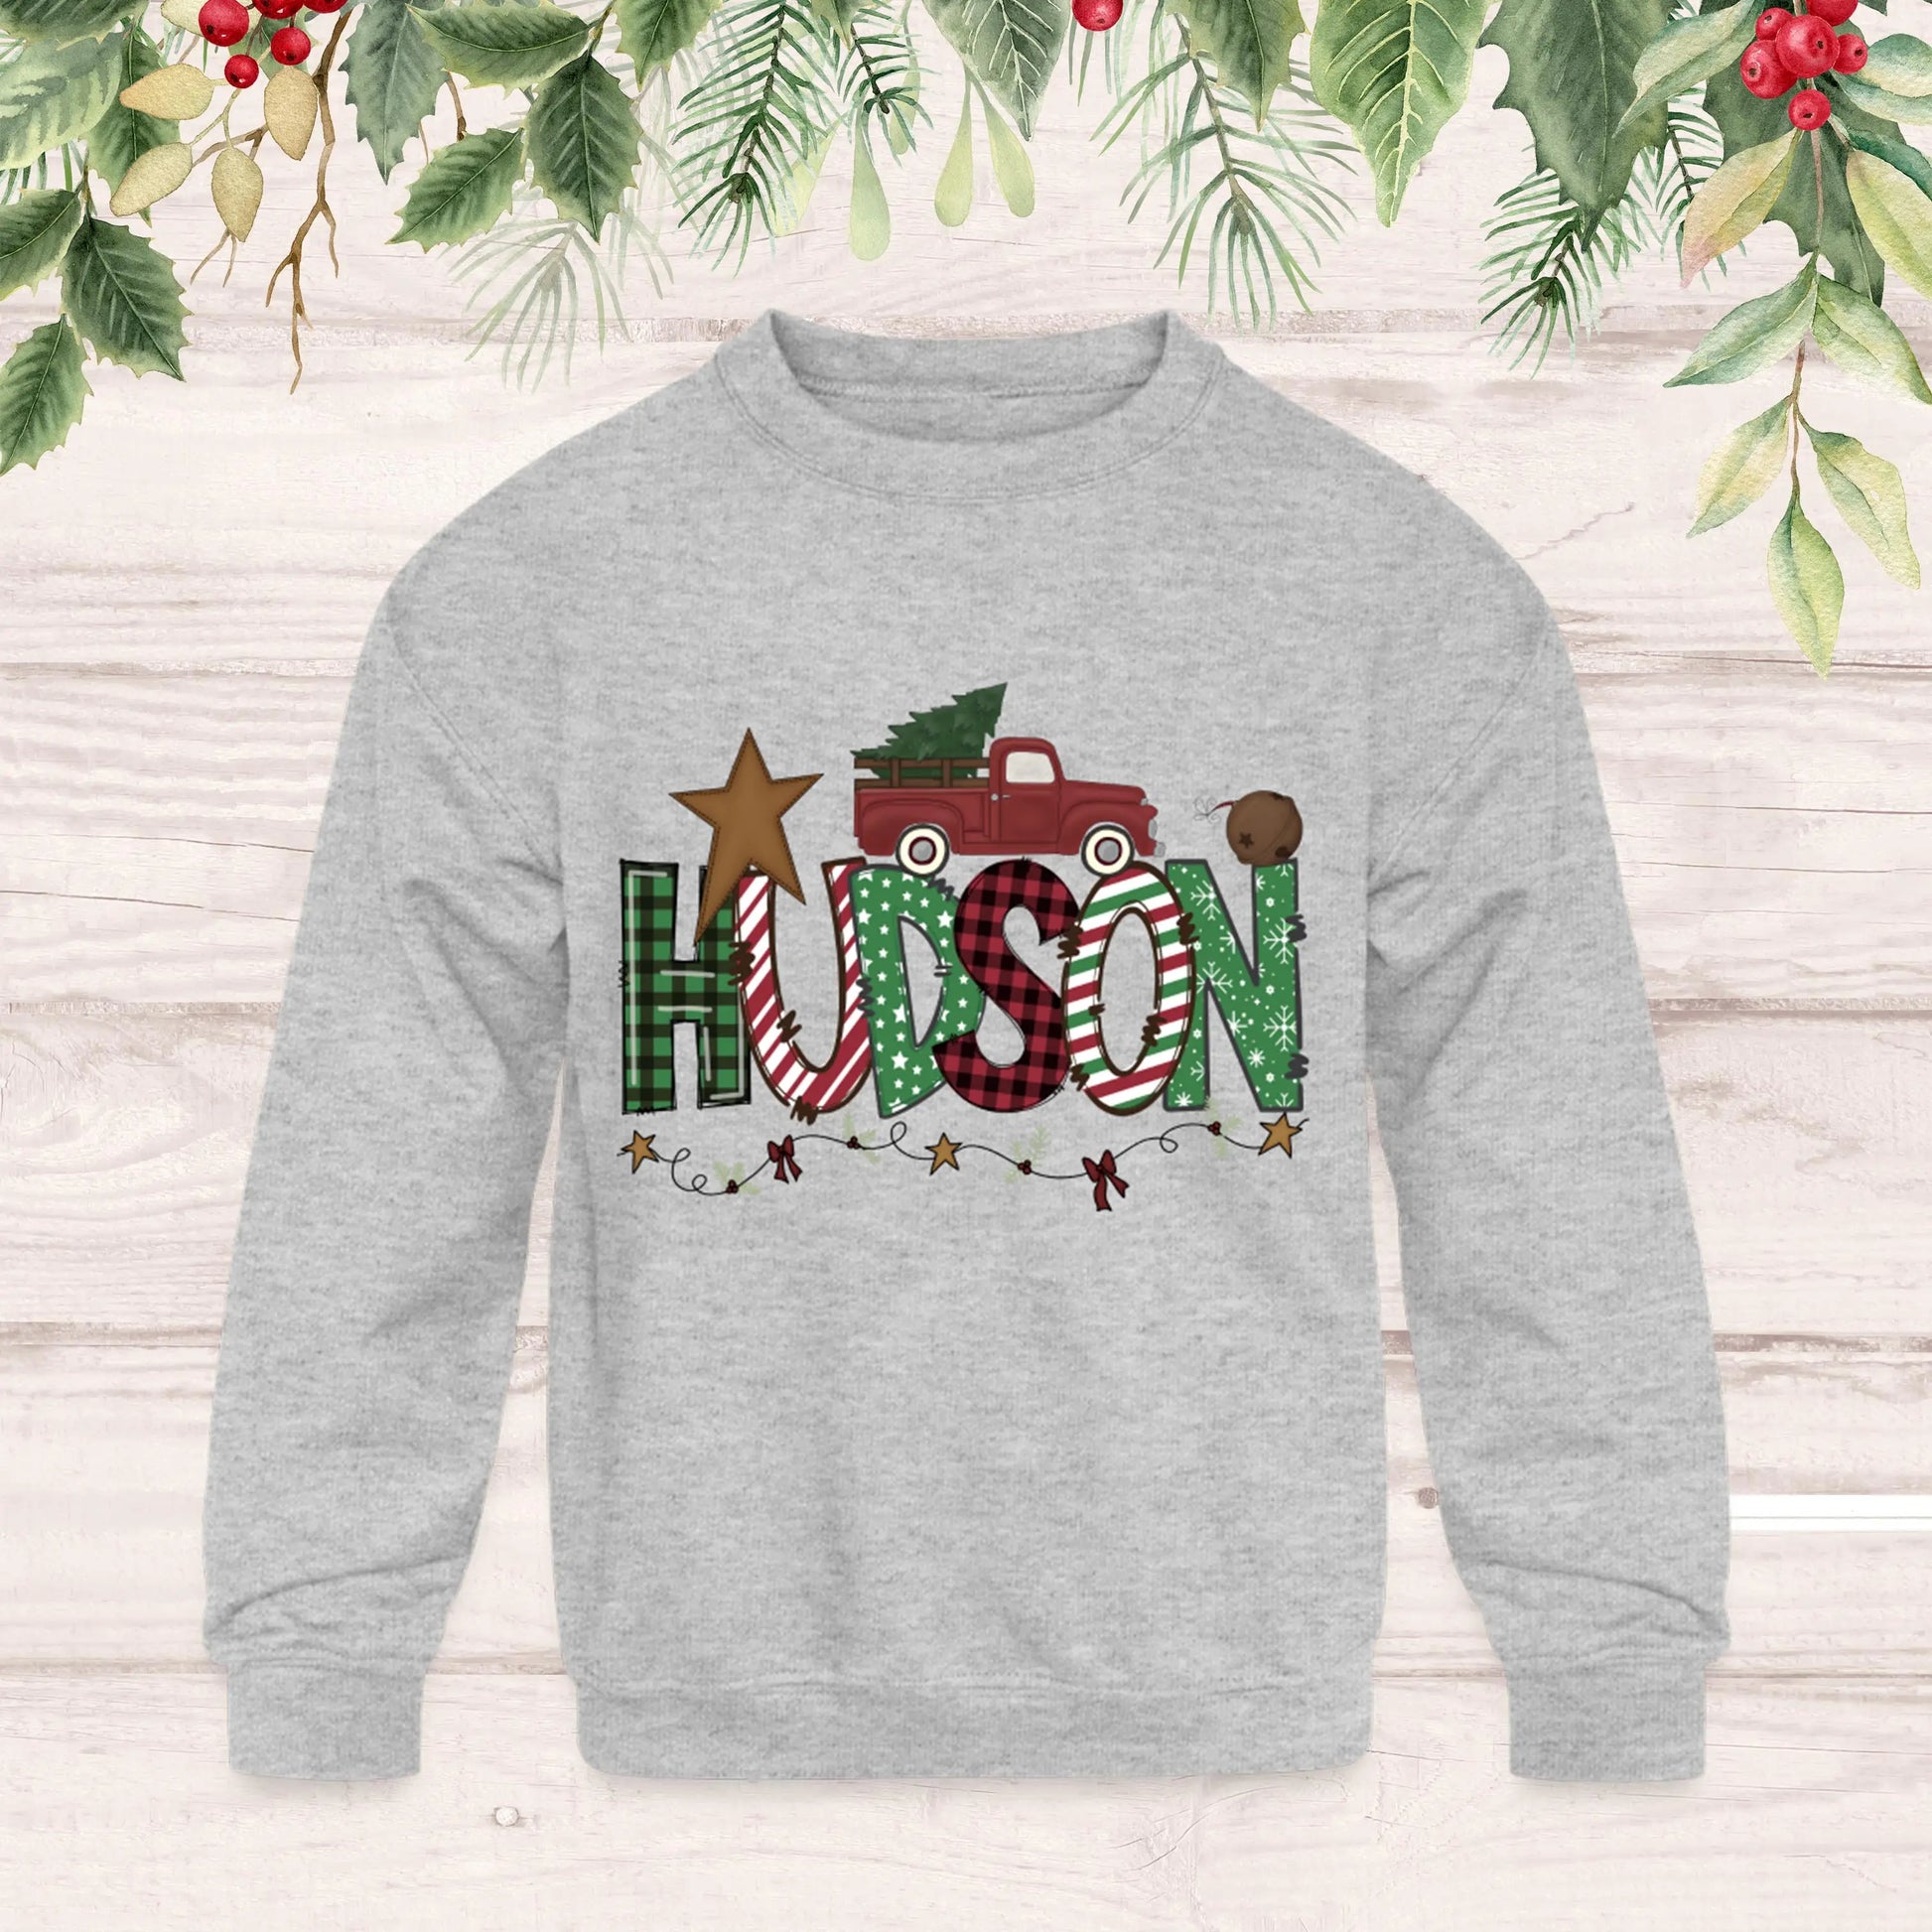 Boys Name Christmas Sweatshirt - Personalized Sweatshirt SPOD